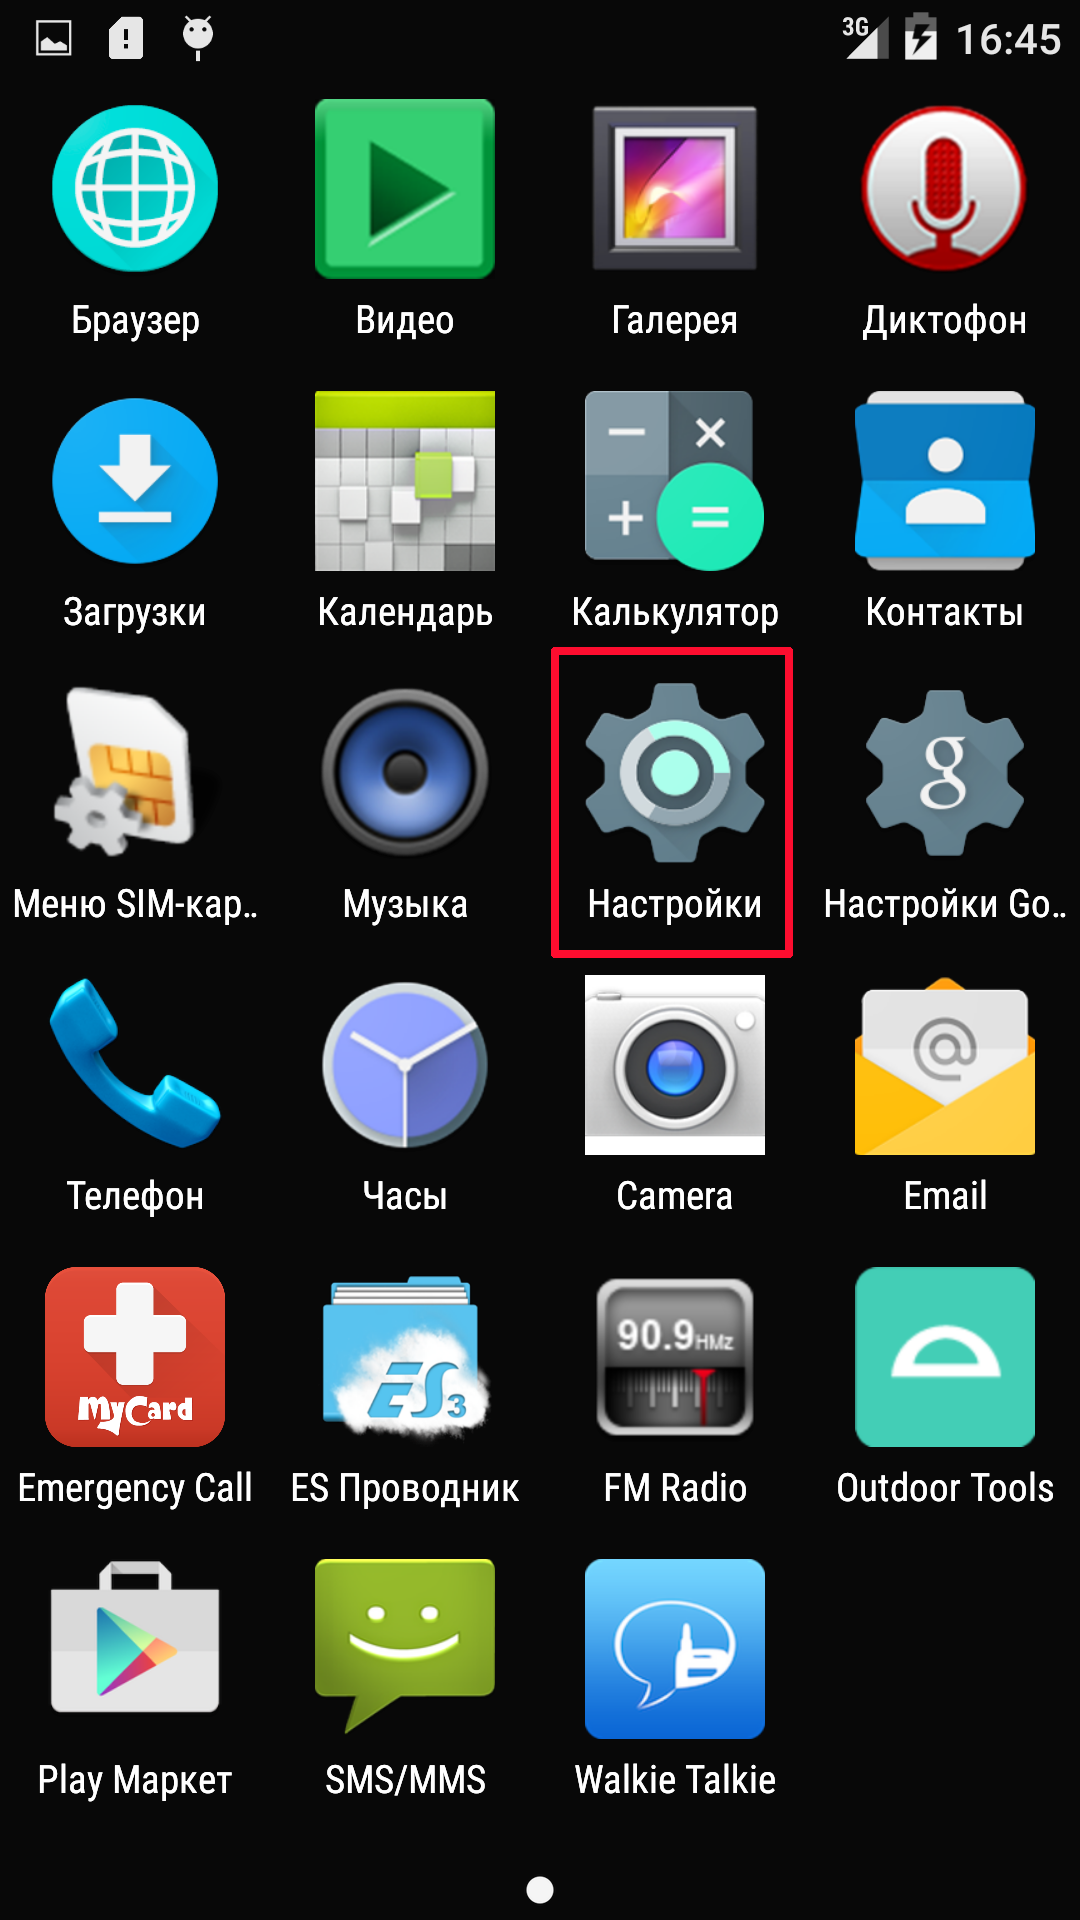 Безопасные сайты для скачивания android-приложений - androidinsider.ru